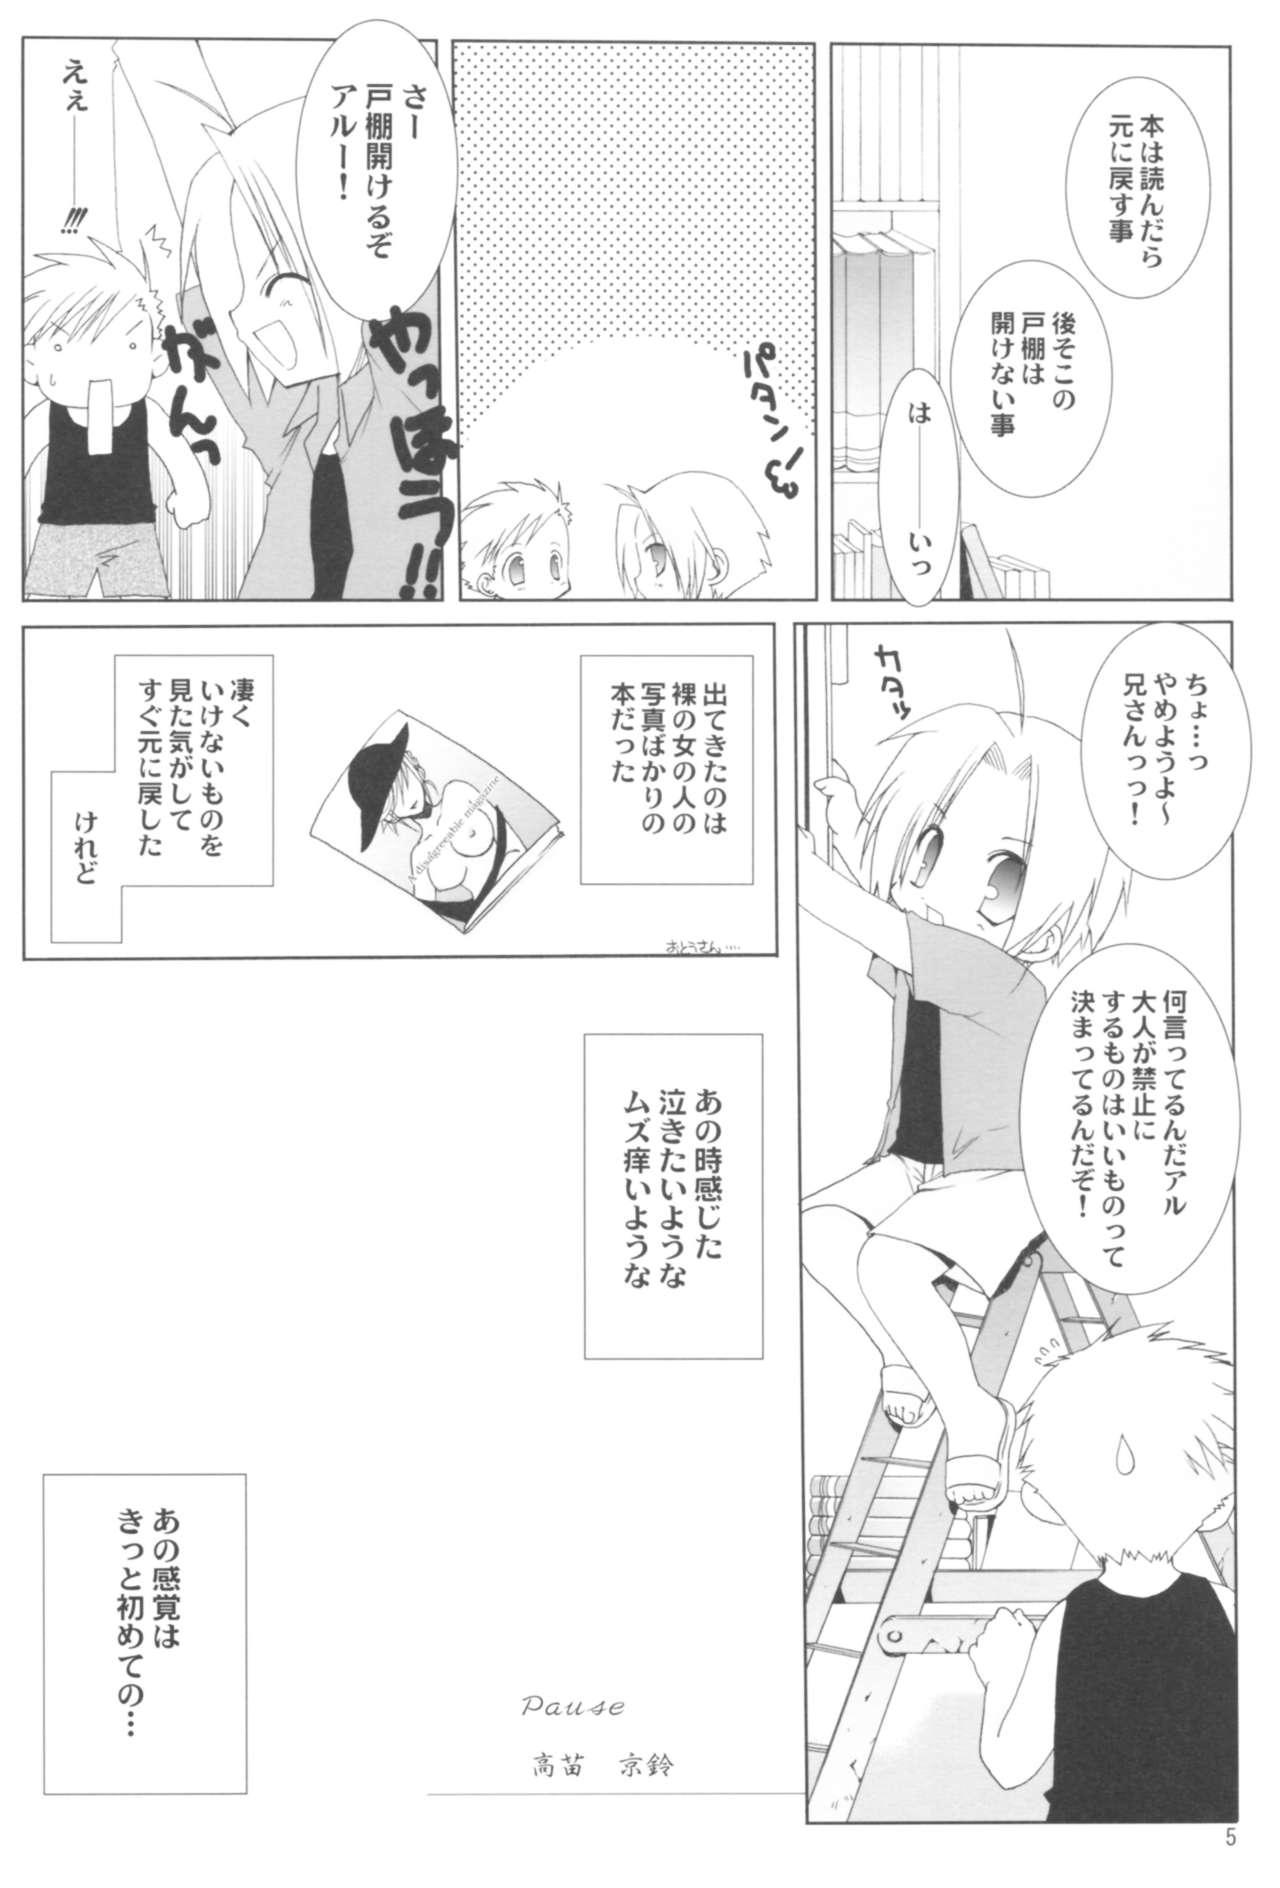 Chupada Naedoko Ikusei Kansatsu Kiroku - Bleach Fullmetal alchemist Higurashi no naku koro ni Pareja - Page 5